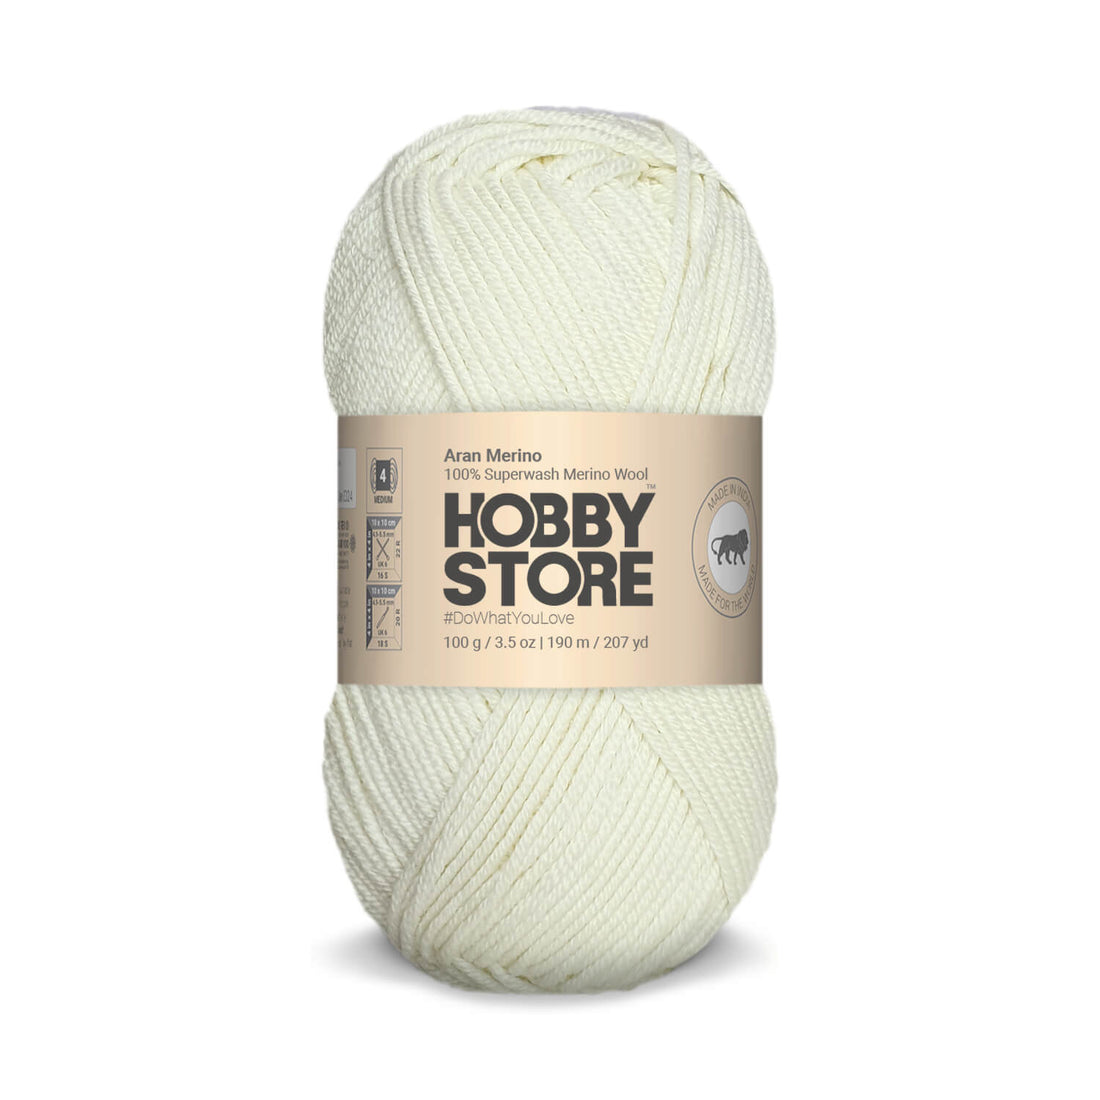 Aran Merino Wool by Hobby Store - Natural White AM021